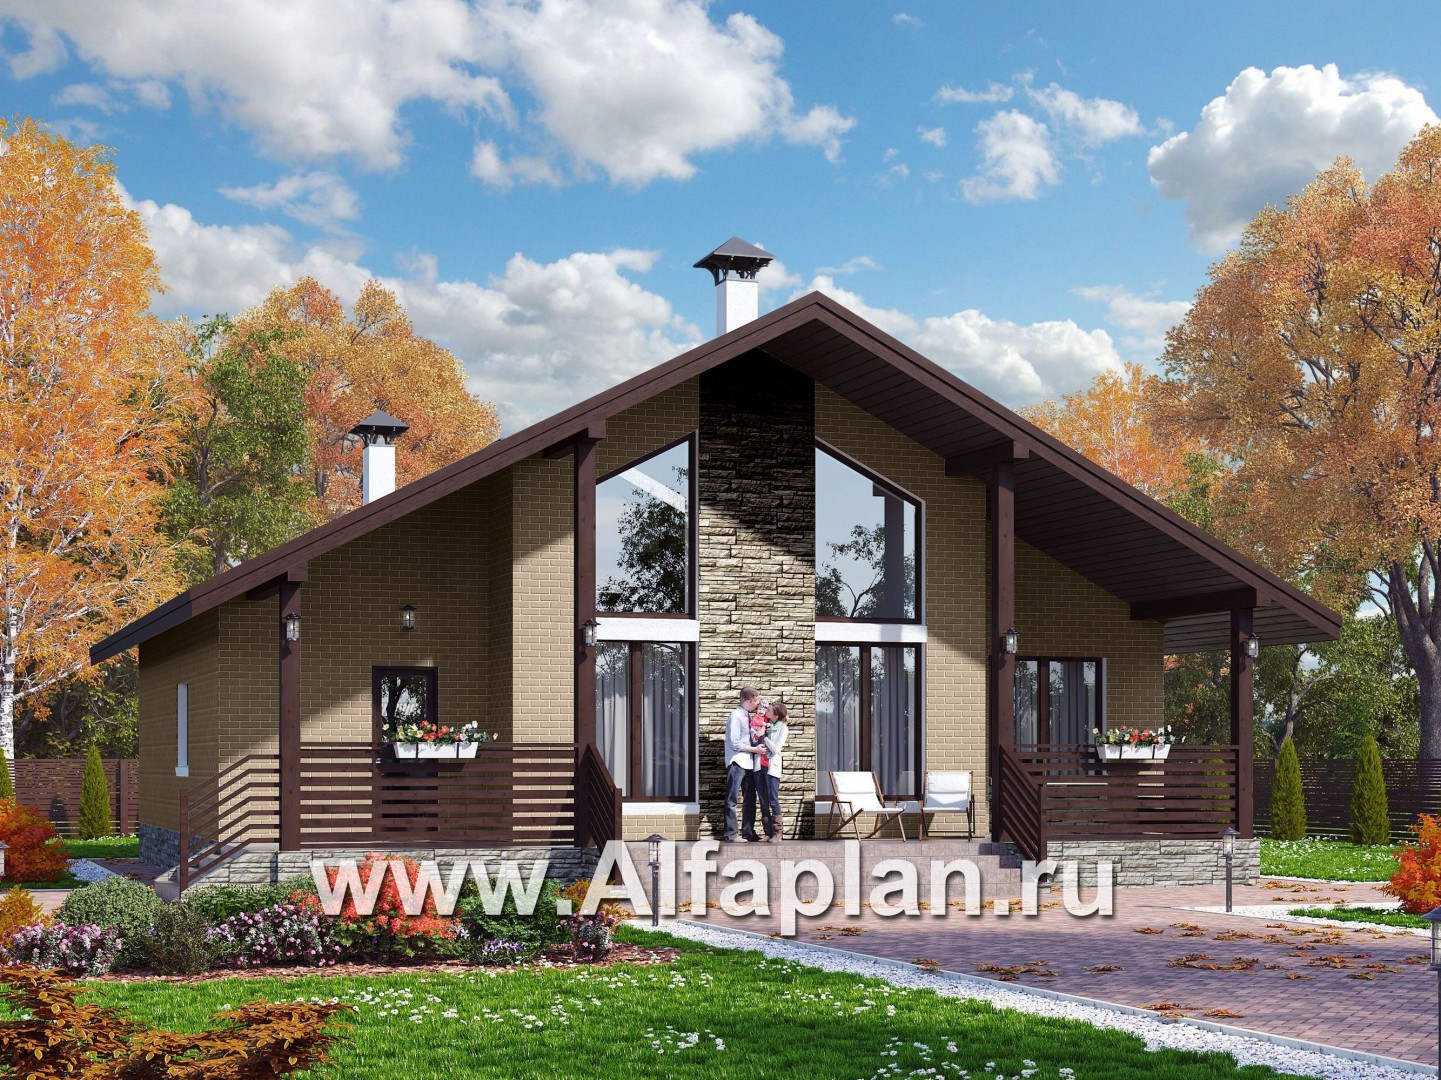 Проекты домов Альфаплан - «Моризо» - проект дома с мансардой, планировка с двусветной гостиной и 2 спальни на 1 эт, шале с двускатной крышей - основное изображение